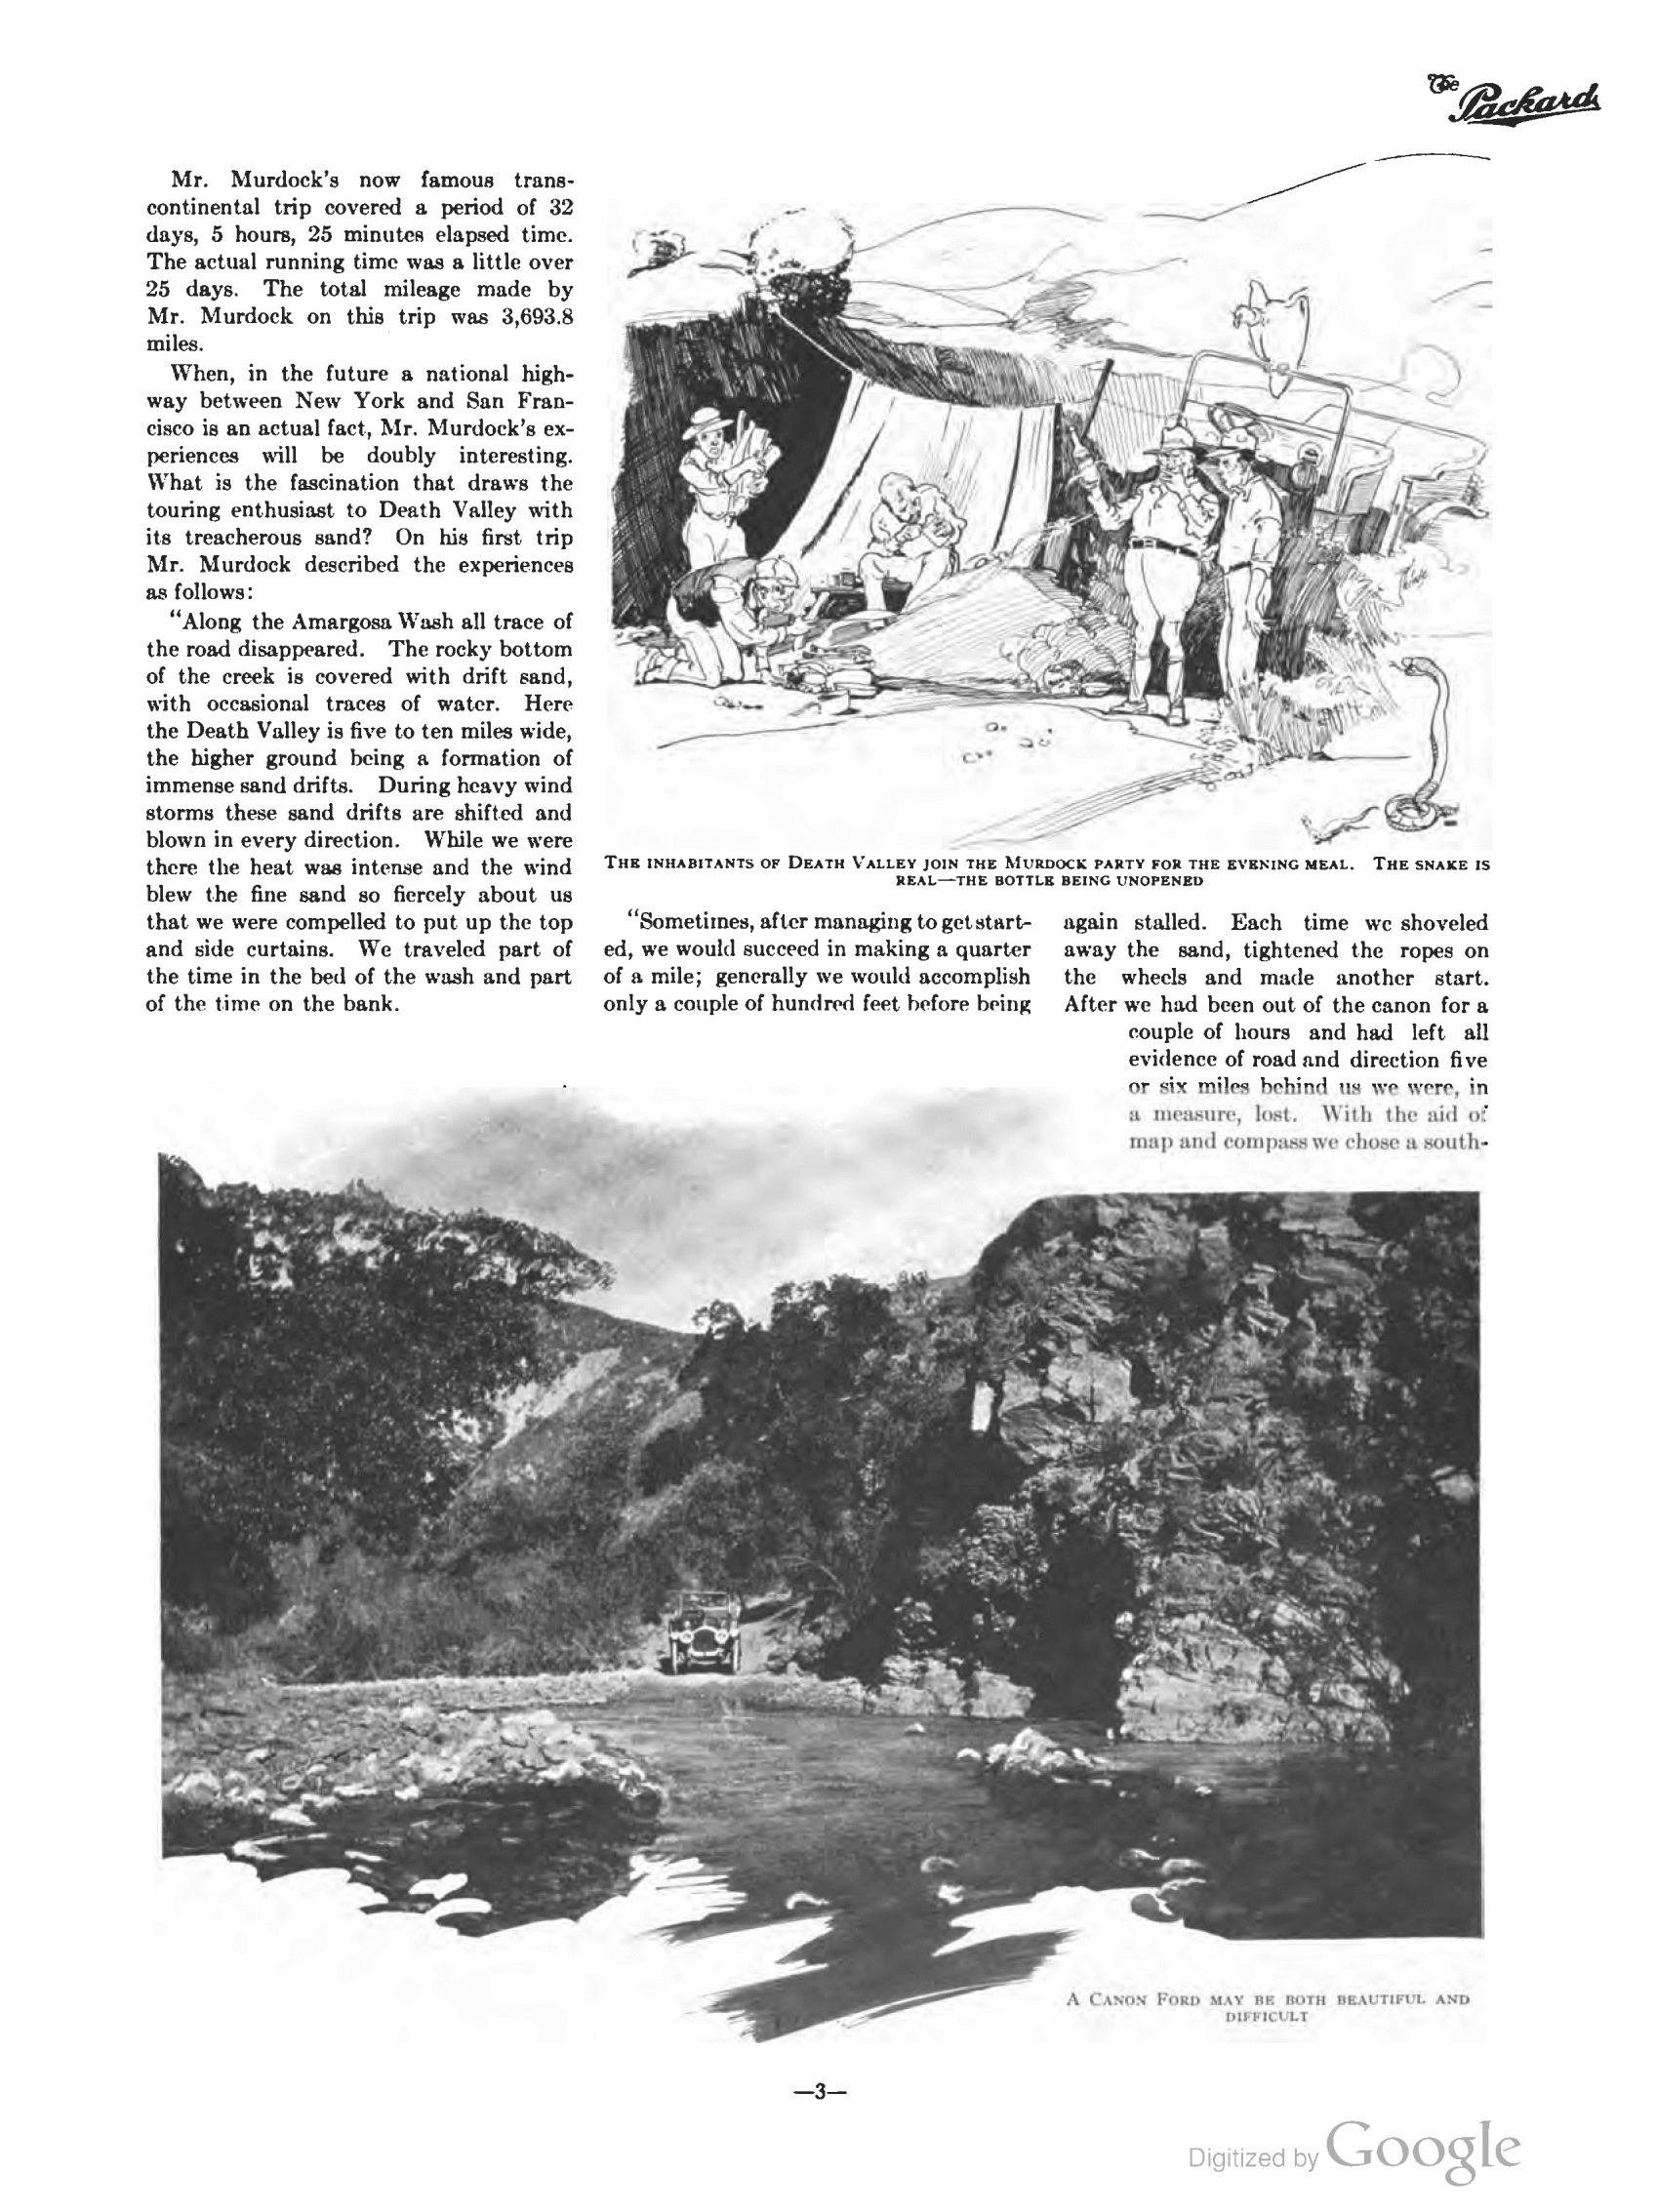 1910_The_Packard_Newsletter-053